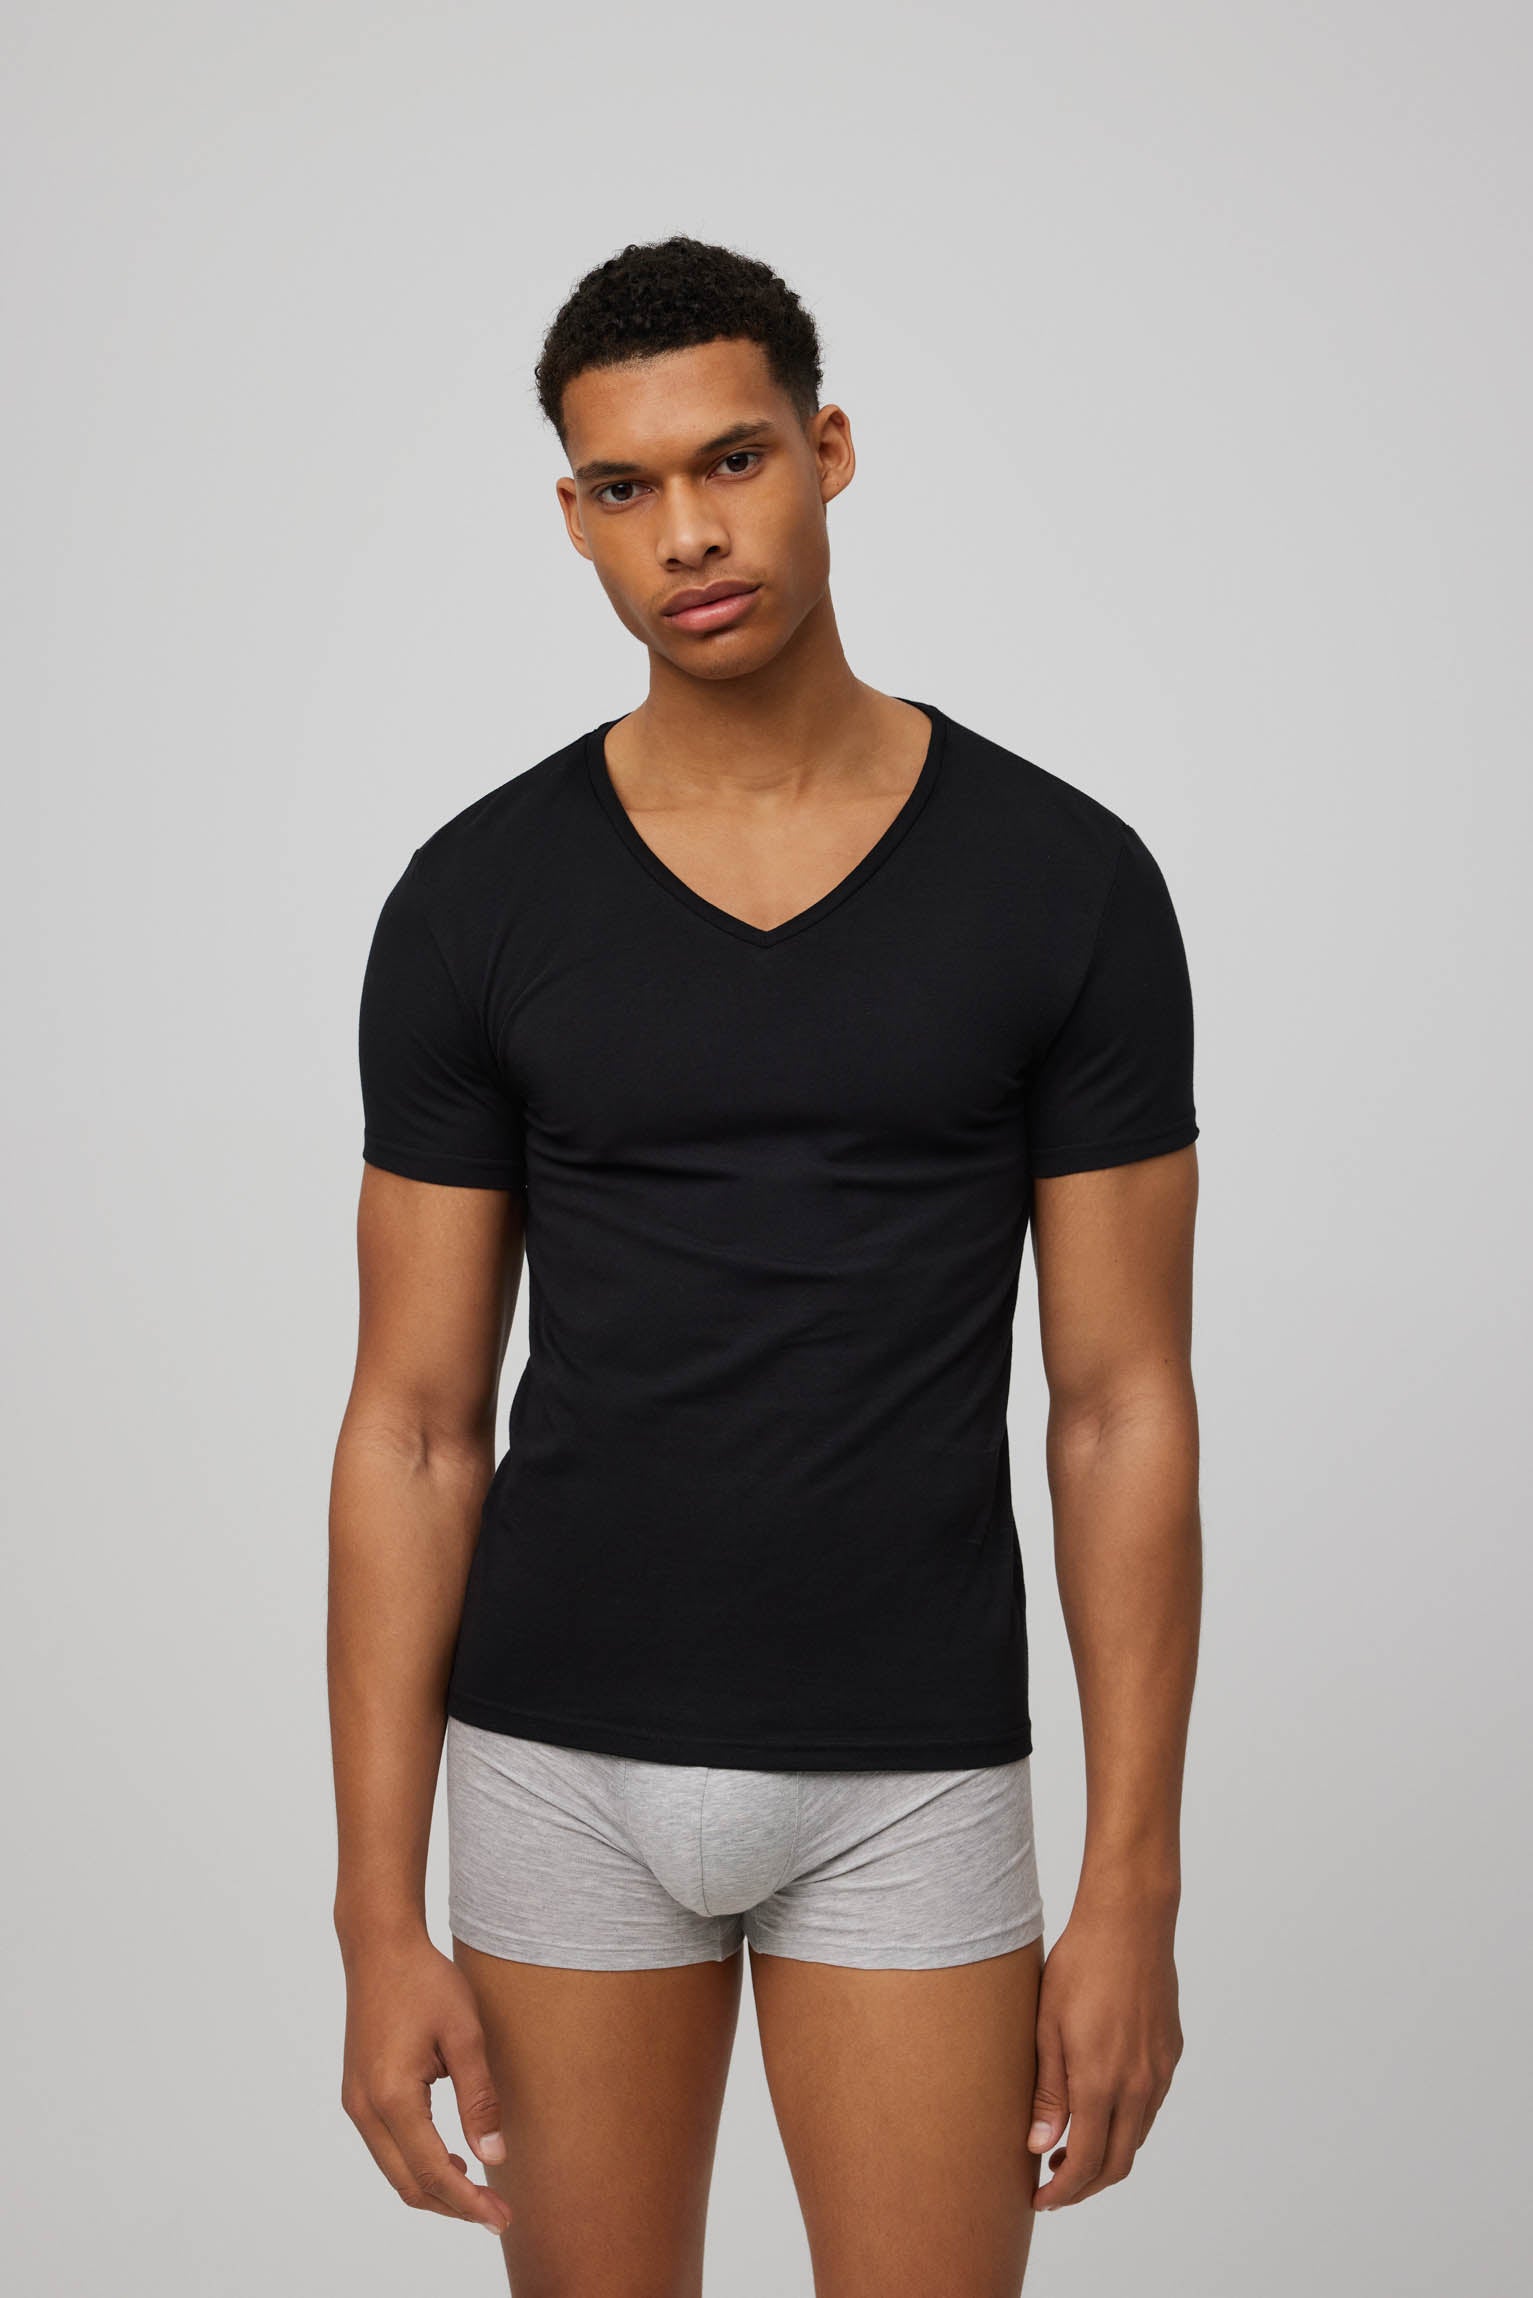 Camiseta negra manga corta - Vausen